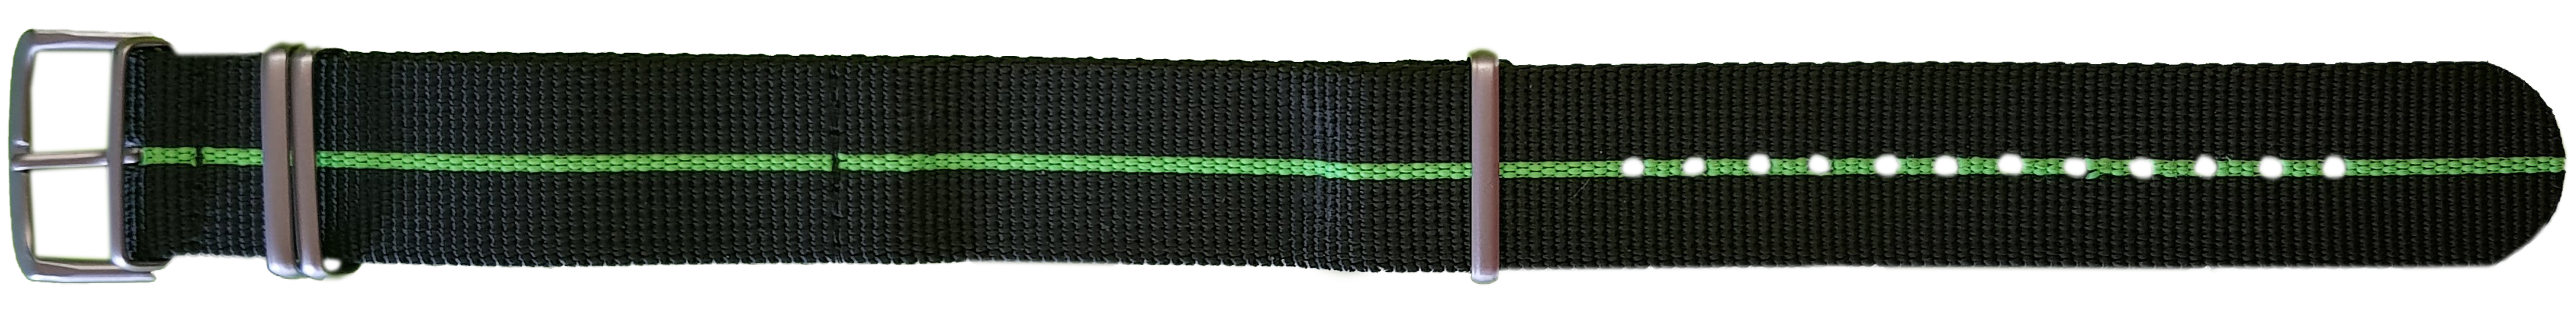 107418 traser® 22mm Textile Strap Black/Green